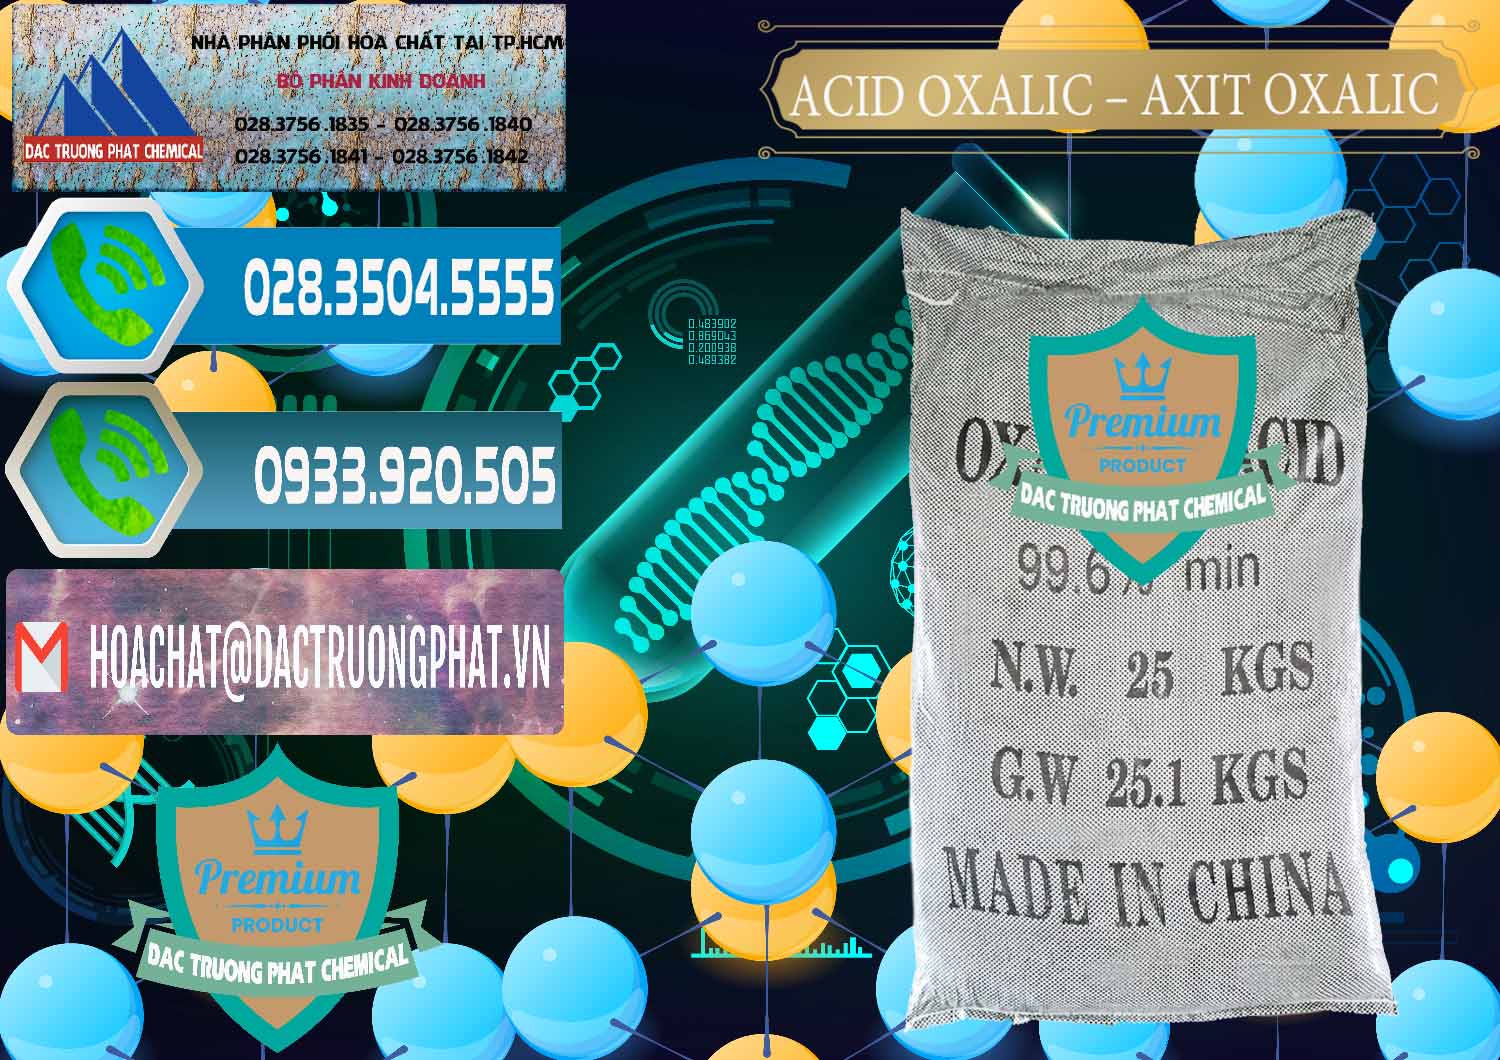 Cty bán và cung cấp Acid Oxalic – Axit Oxalic 99.6% Trung Quốc China - 0014 - Công ty chuyên cung cấp & nhập khẩu hóa chất tại TP.HCM - congtyhoachat.net